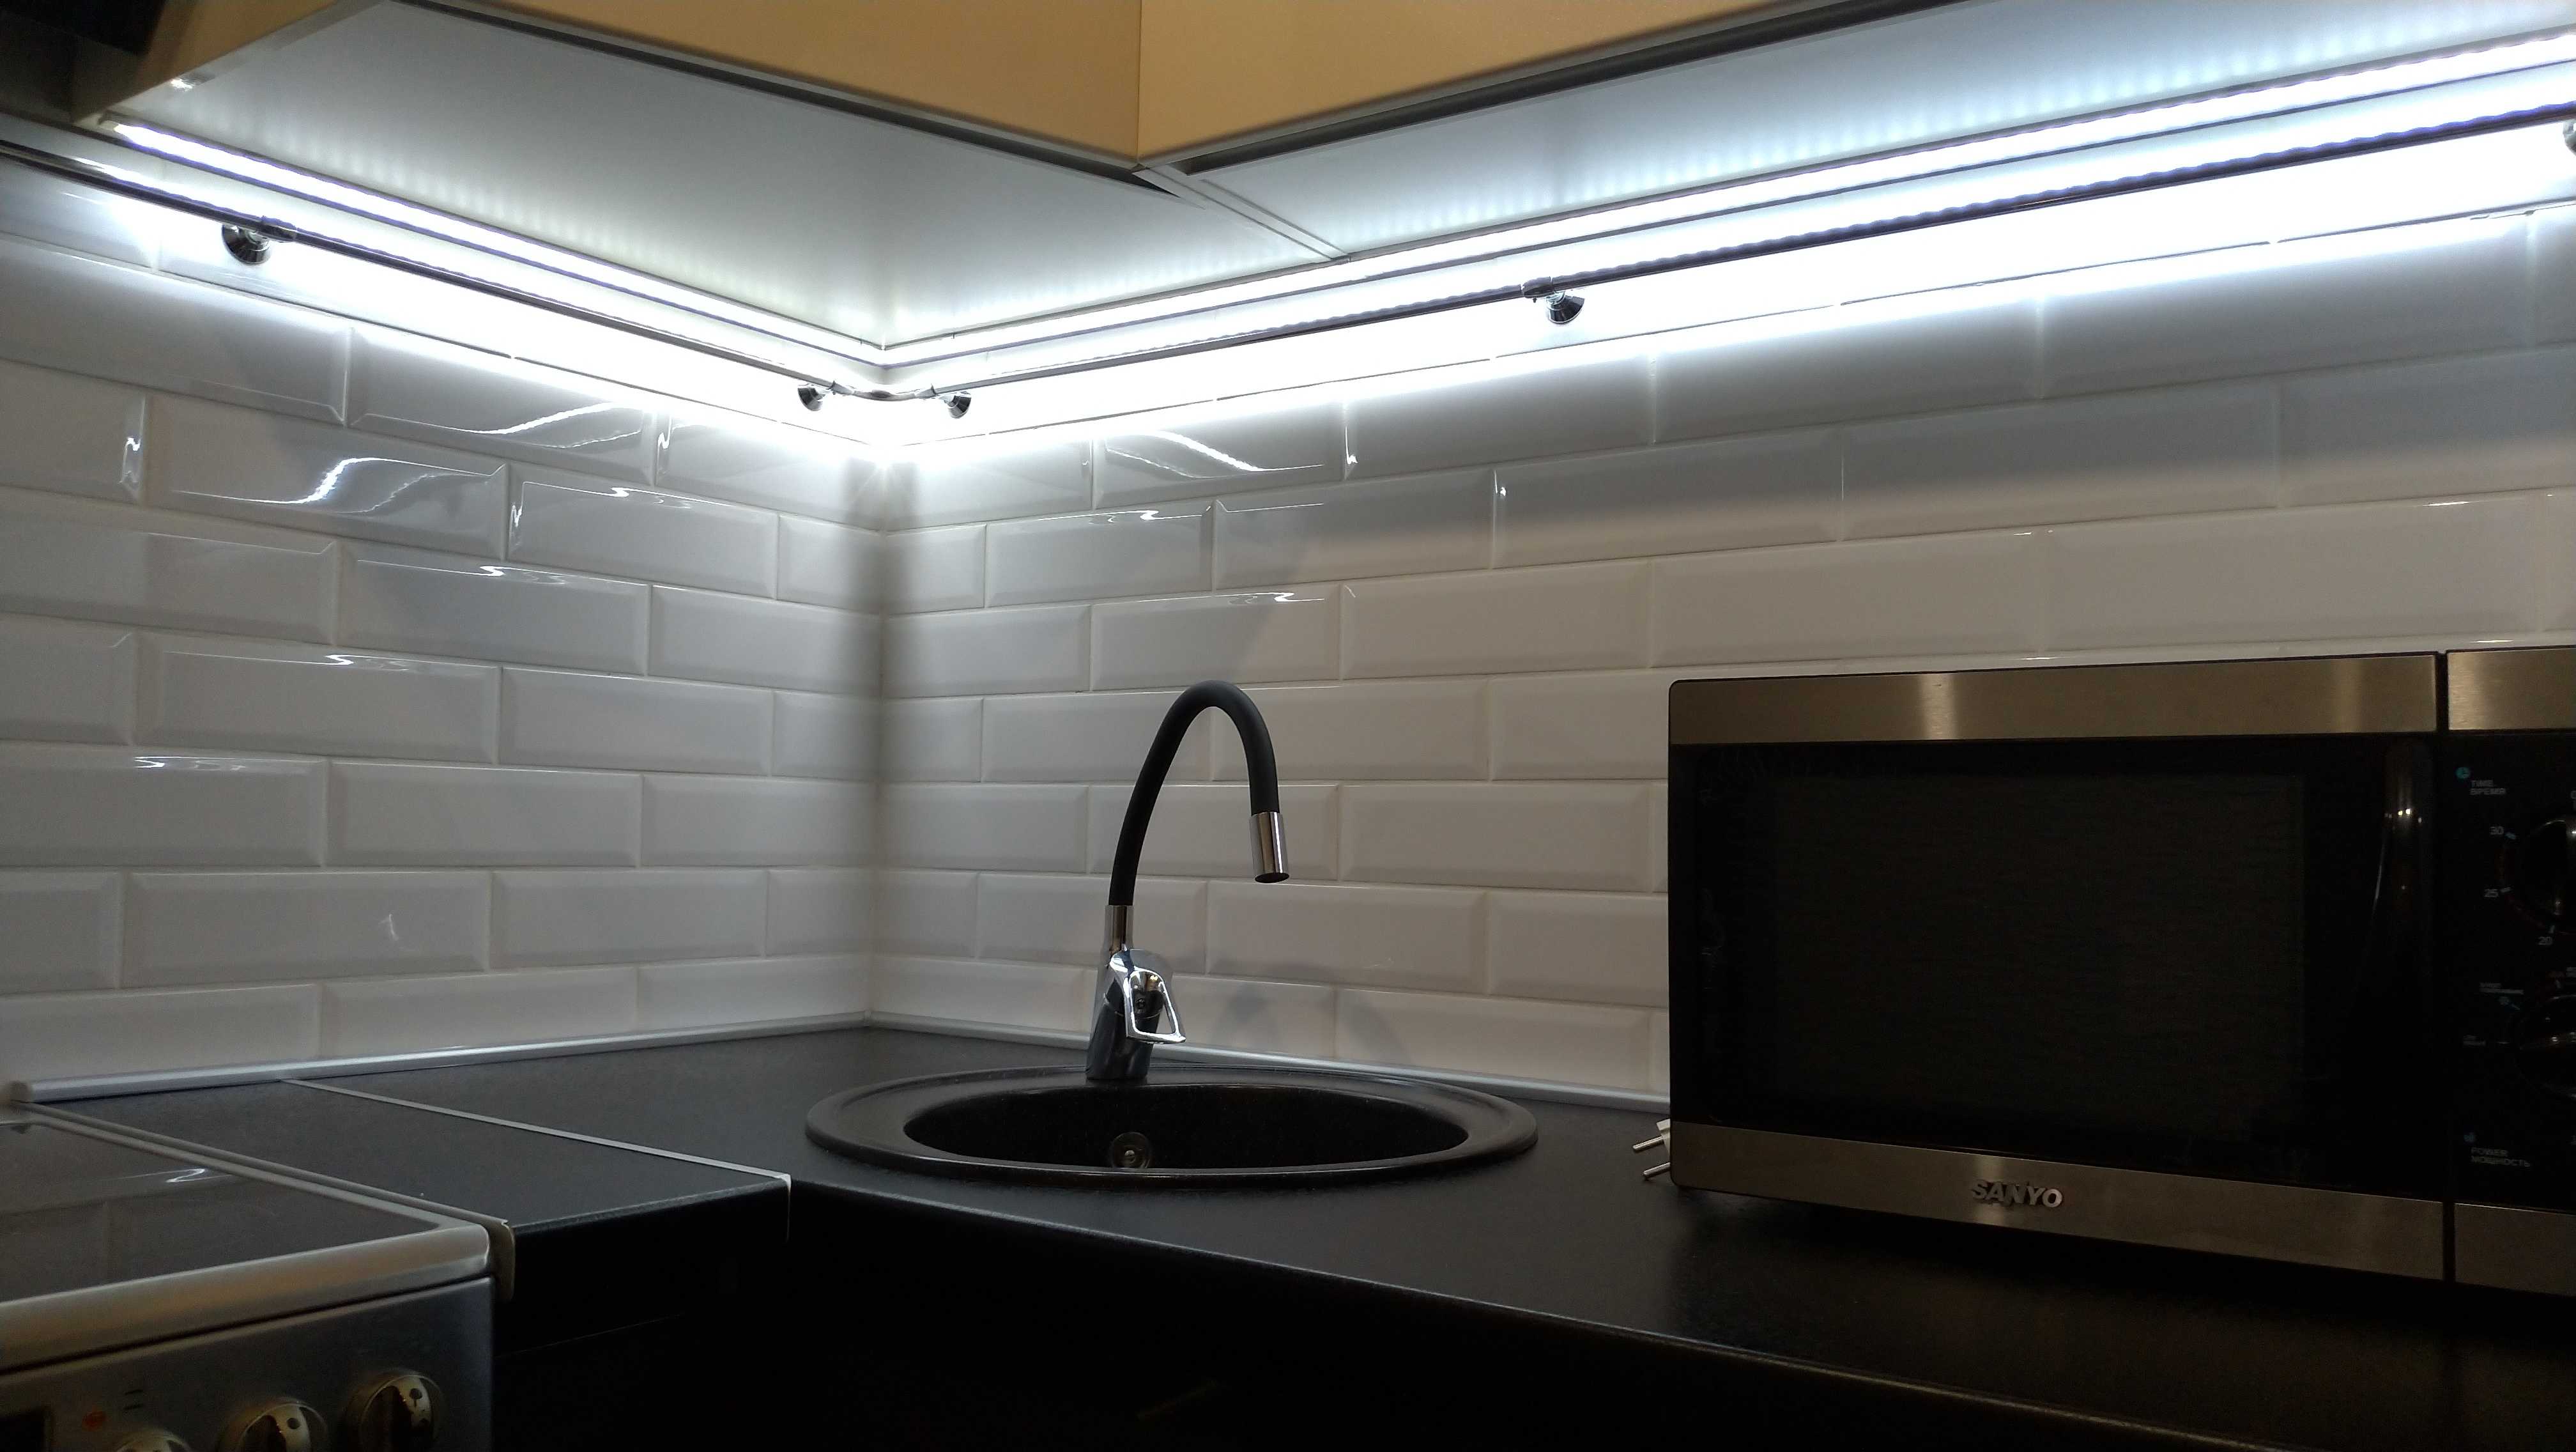 Светодиодная лента на кухню под шкафы: инструкция по установке 